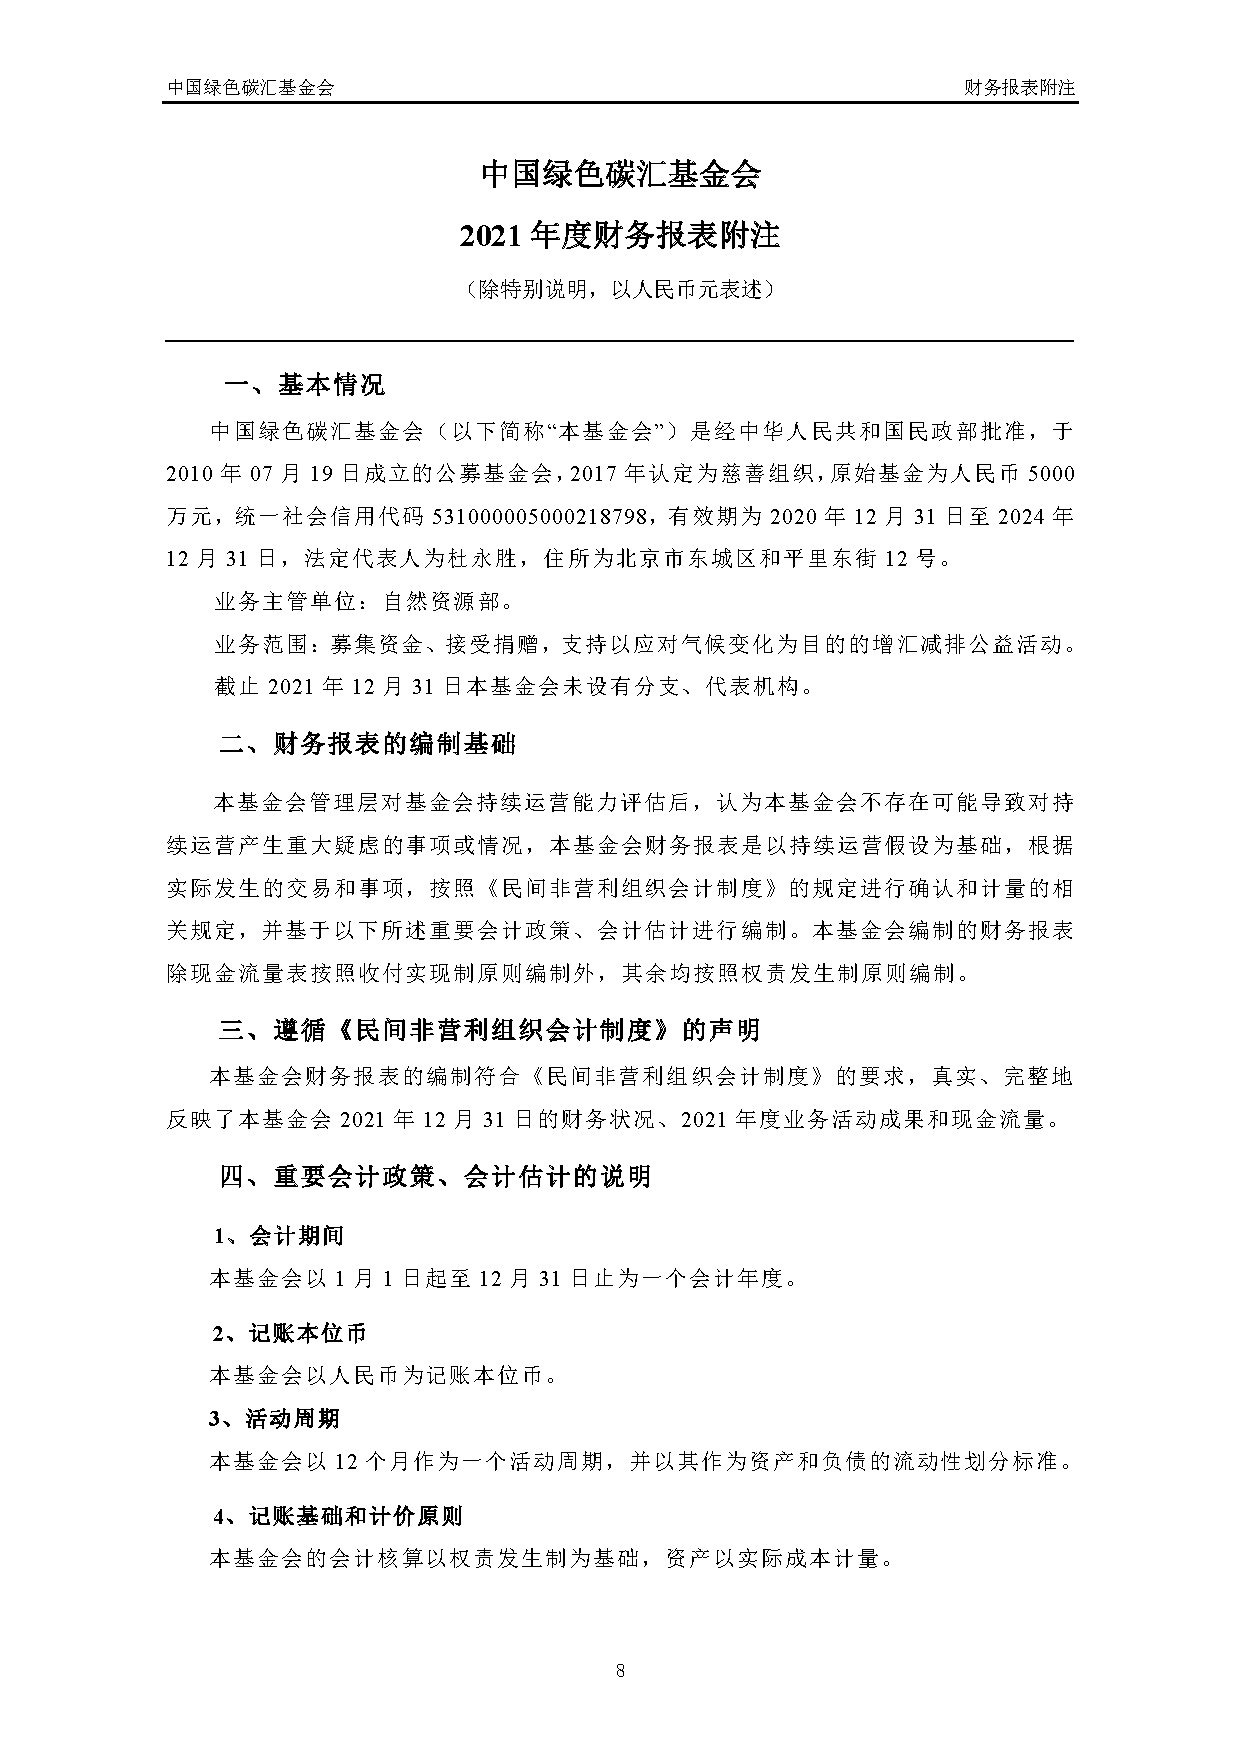 中国绿色碳汇基金会2021年度审计报告_页面_09